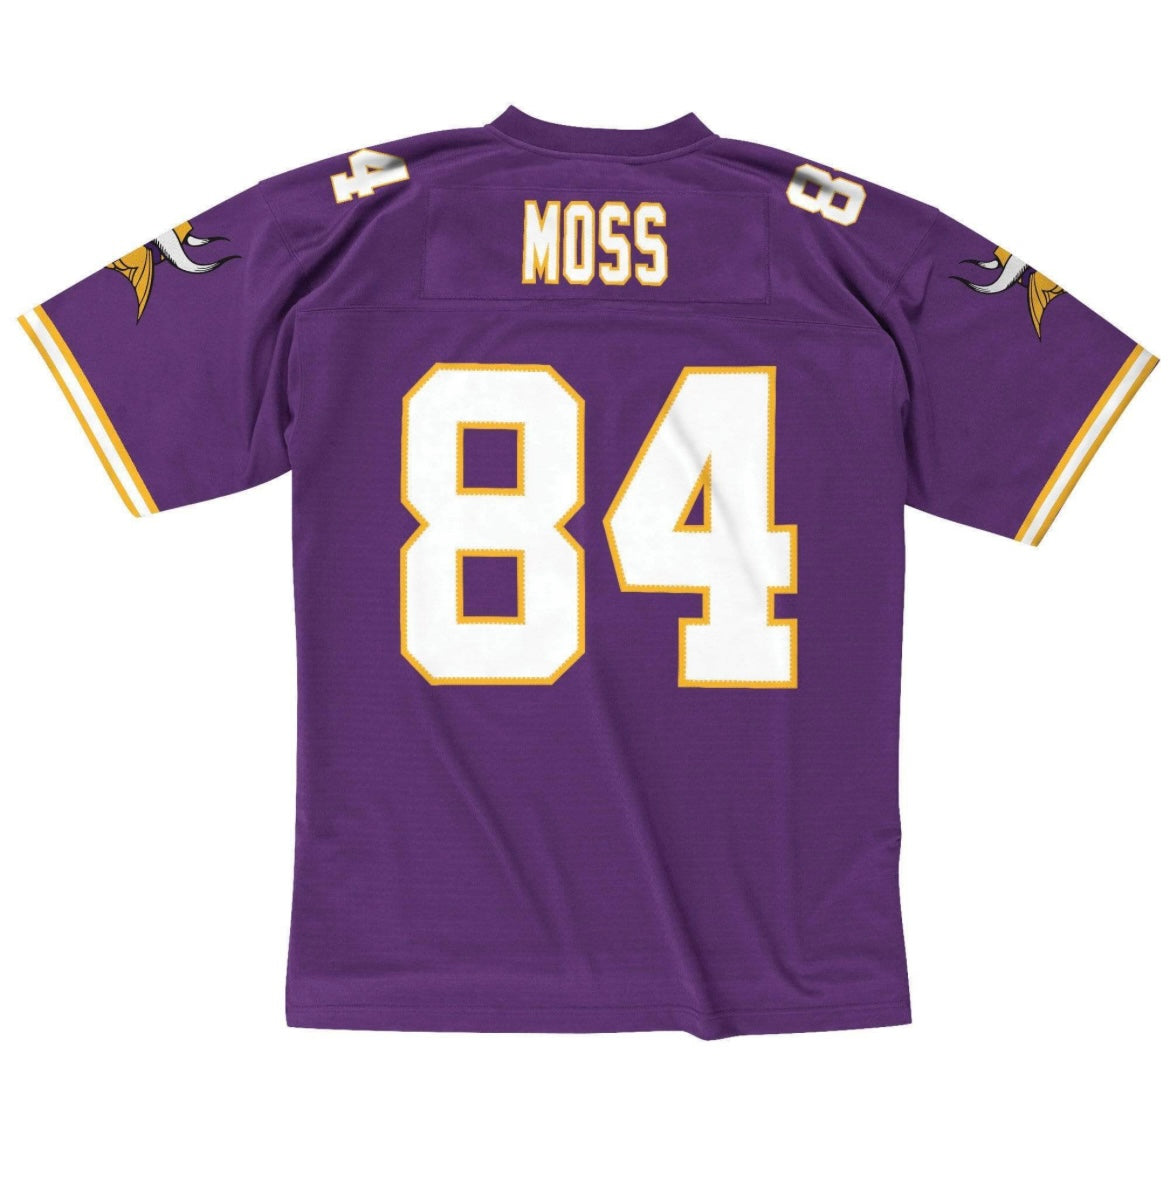 Randy Moss Mitchell & Ness 1998 Minnesota Vikings Iconic Legendary Jersey